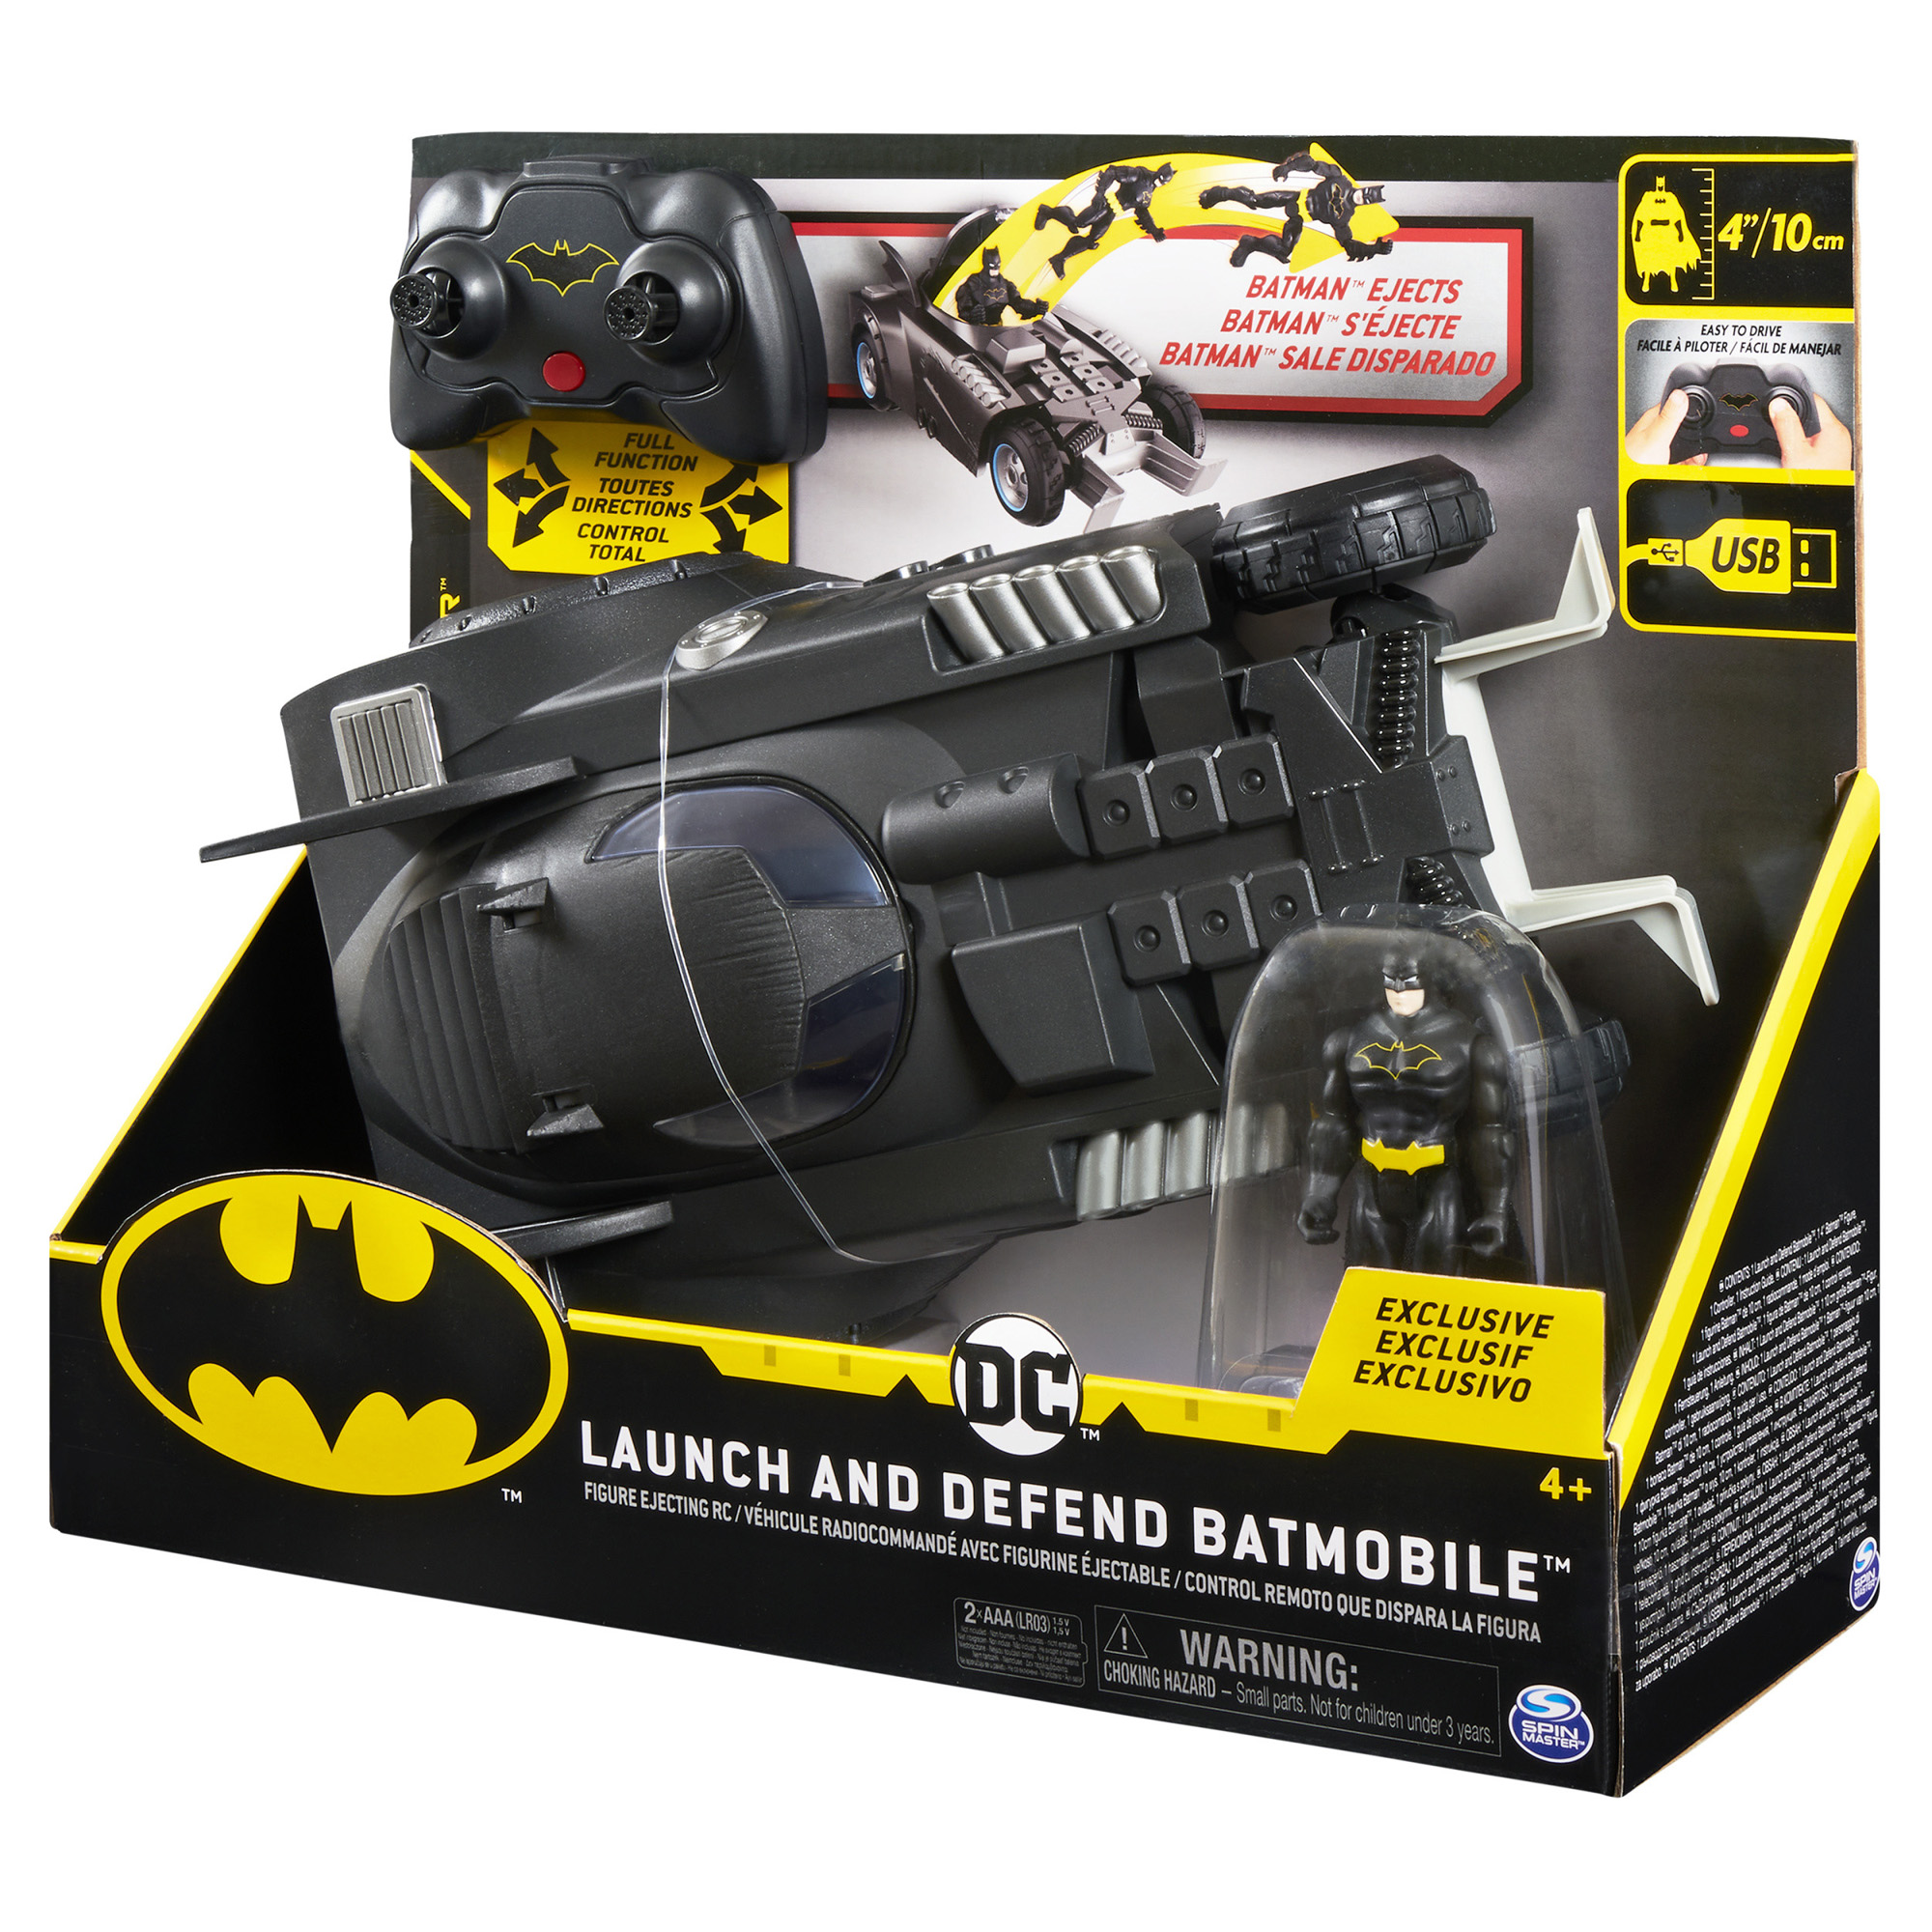 Batmobile Radiocomandata Launch and Defend, con sedile ad espulsione scala 1:16 - DC Comics